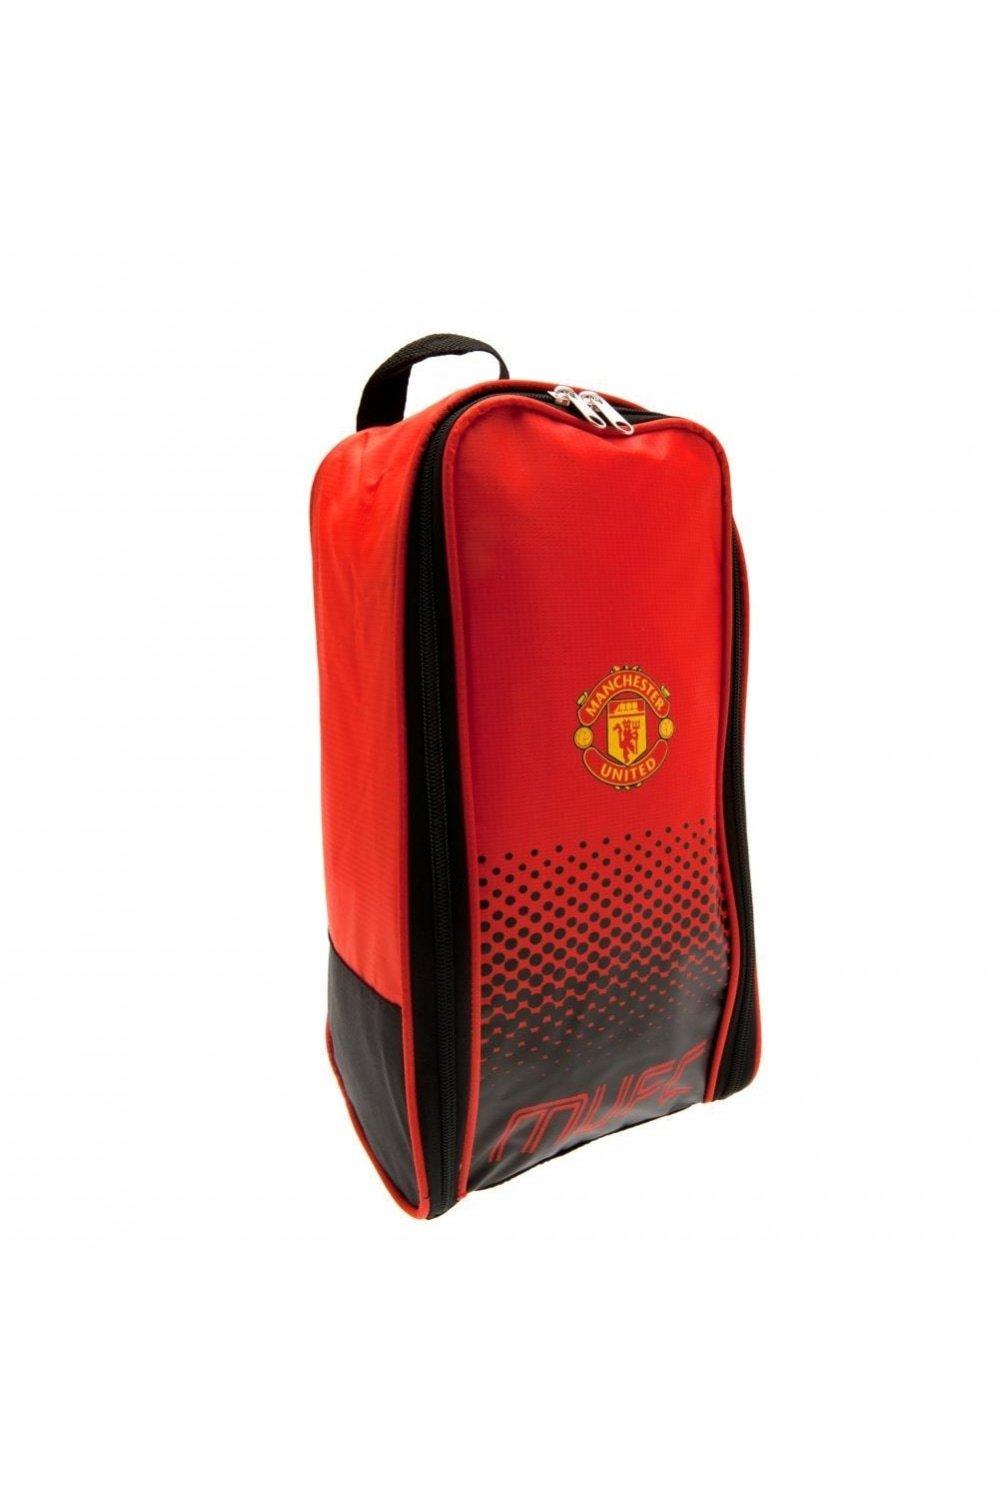 Сумка для обуви Fade Design Manchester United FC, красный спортивная сумка манчестер юнайтед manchester united fc красный